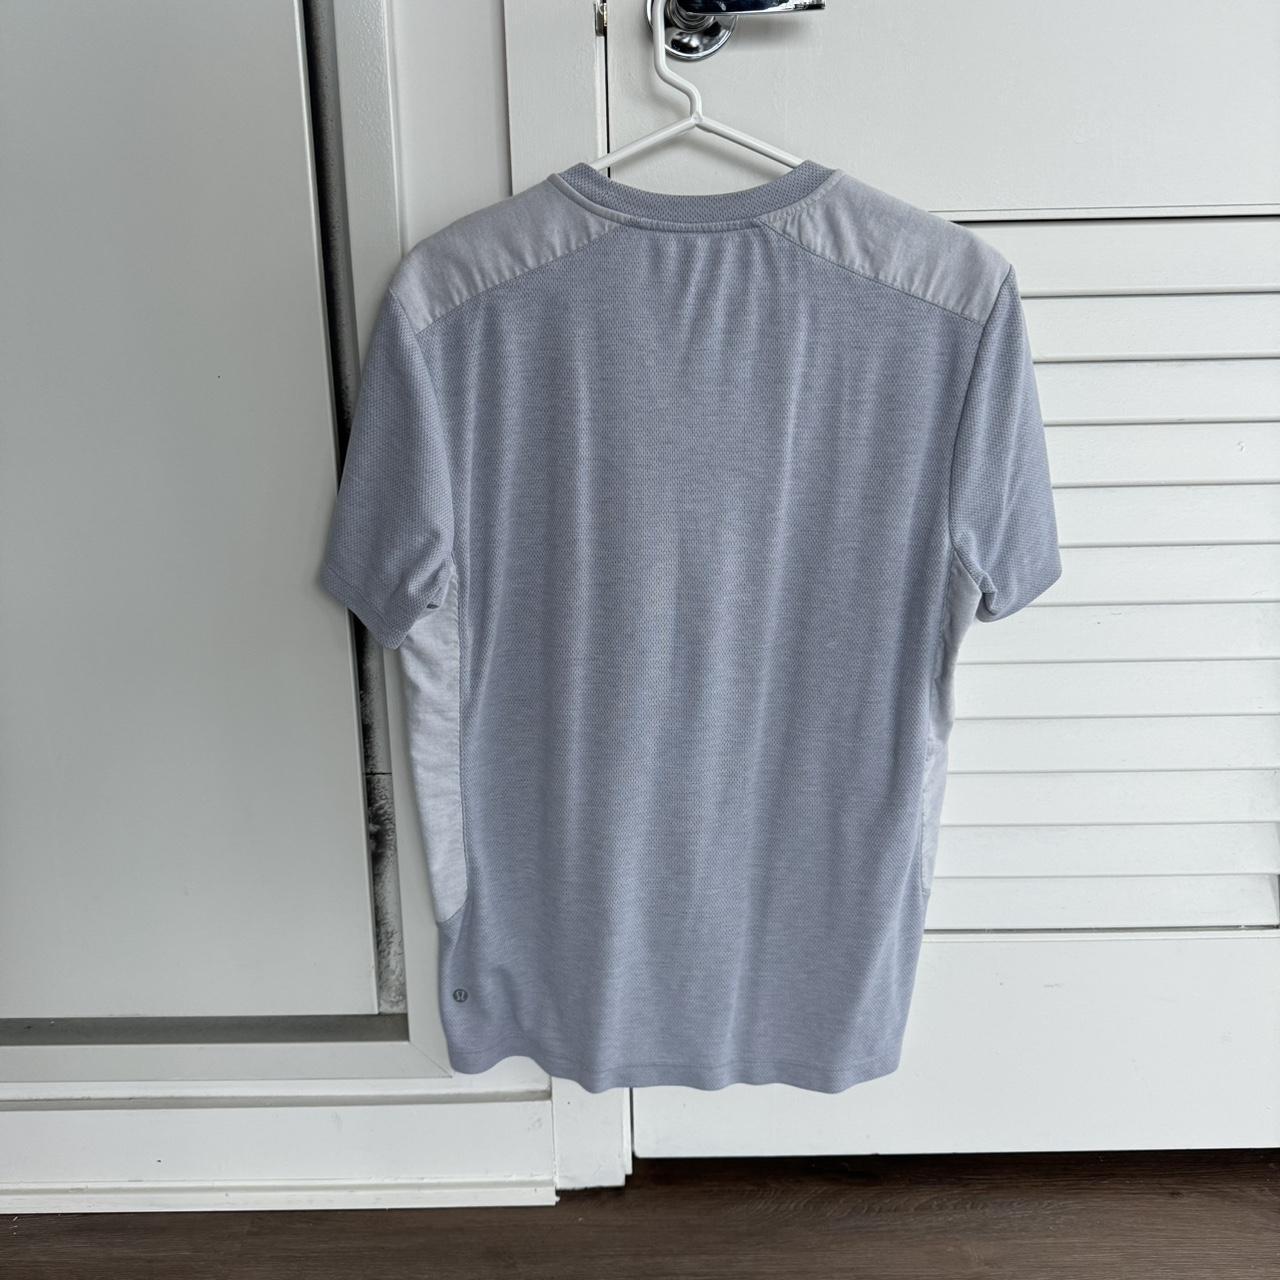 Grey Lululemon shirt #lululemon #tshirt #grey #shirt